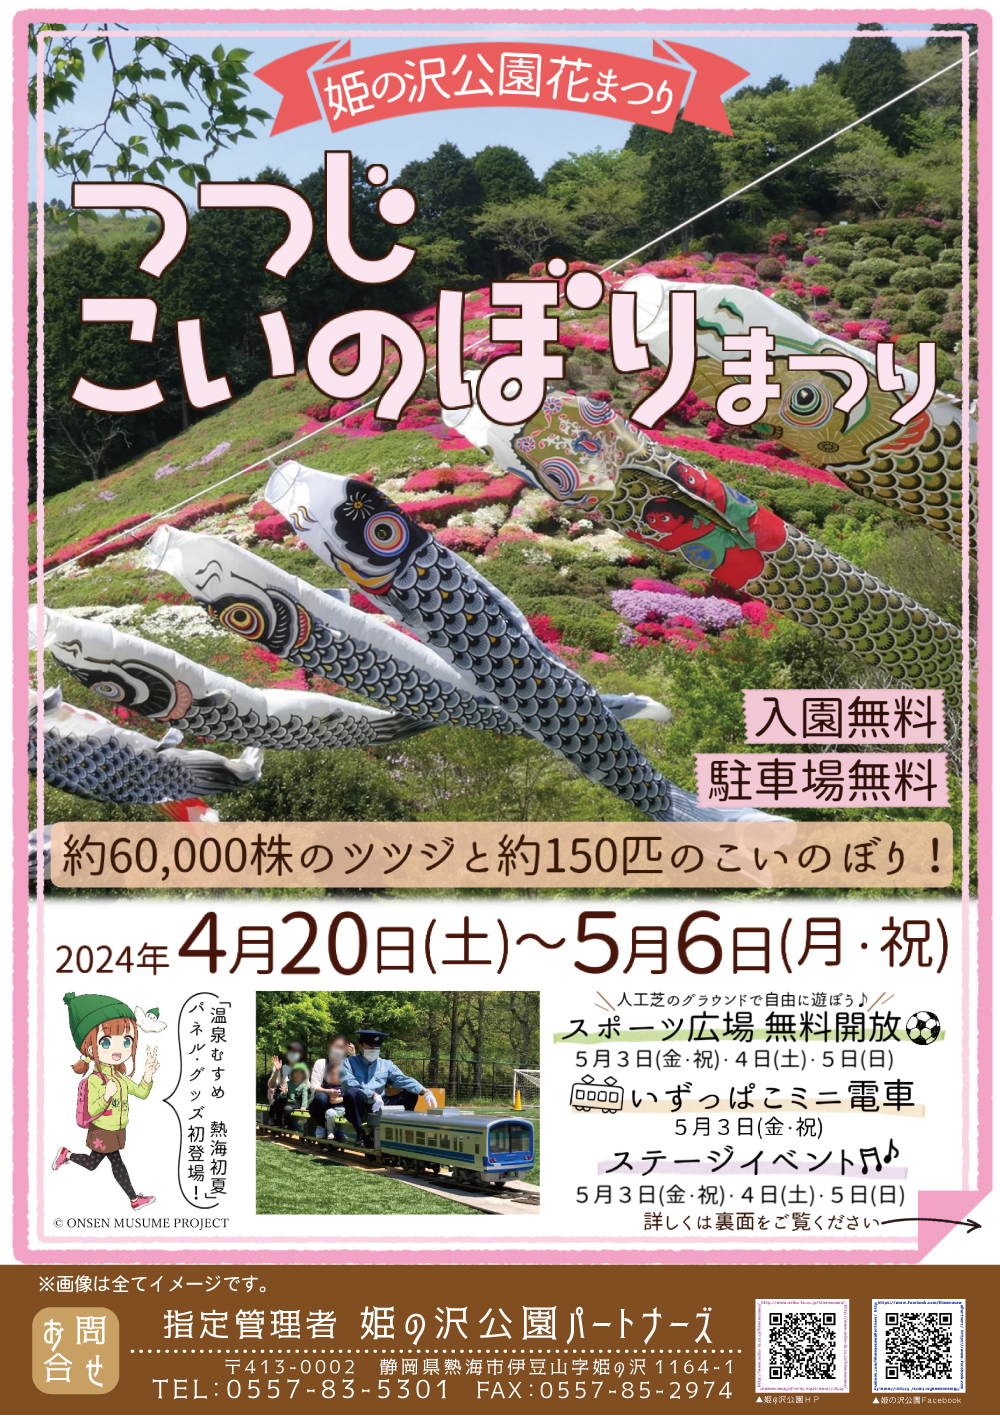 春の訪れを感じるこの季節、静岡県熱海市にある自然豊かな姫の沢公園では、2024年4月20日（土）から5月6日（月・祝）までの期間、「つつじ・こいのぼりまつり」が開催されます。このお祭りは、約6万株の鮮やかなツツジと約150匹の色鮮やかなこいのぼりが、新緑の中を彩ることで知られています。入園無料で、家族での思い出作りにぴったりのイベントです。